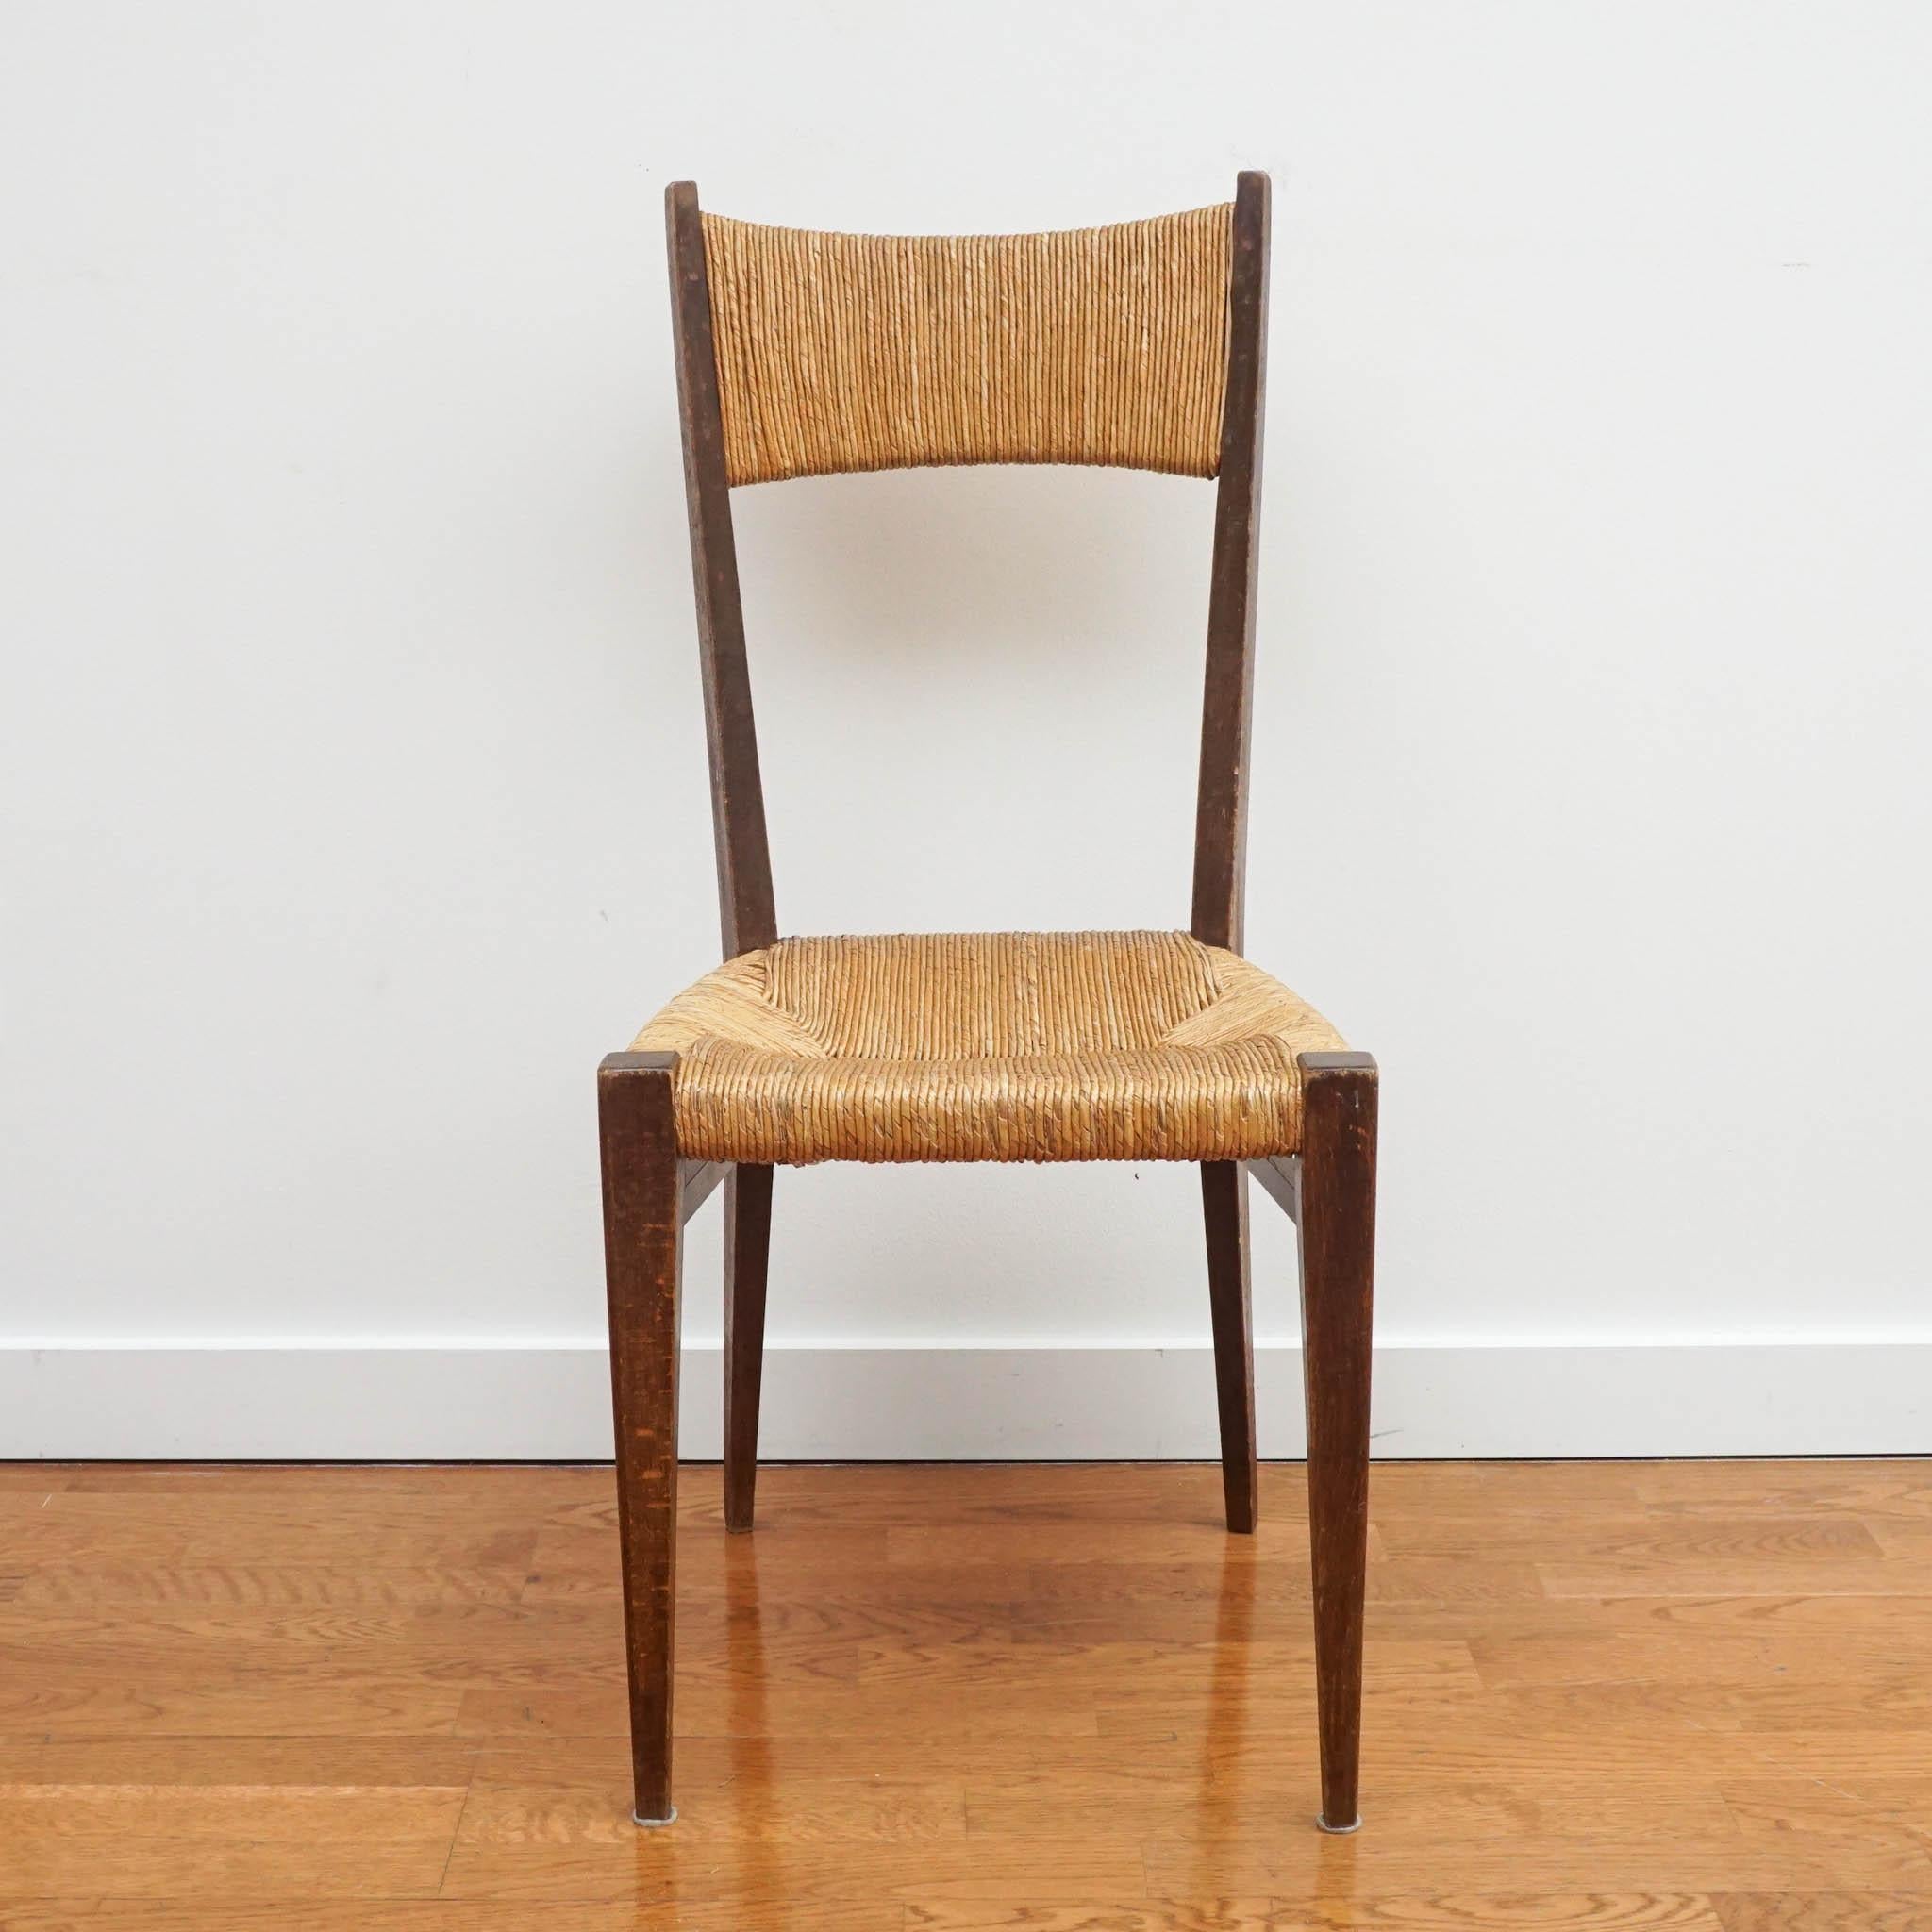 Elegante und schlanke französische Esszimmerstühle aus den 1970er Jahren. Die einzigartige Rückenlehne und Sitzfläche aus Stroh und das Gestell aus massiver Eiche machen diese Stühle zu etwas ganz Besonderem.
Separat verkauft.